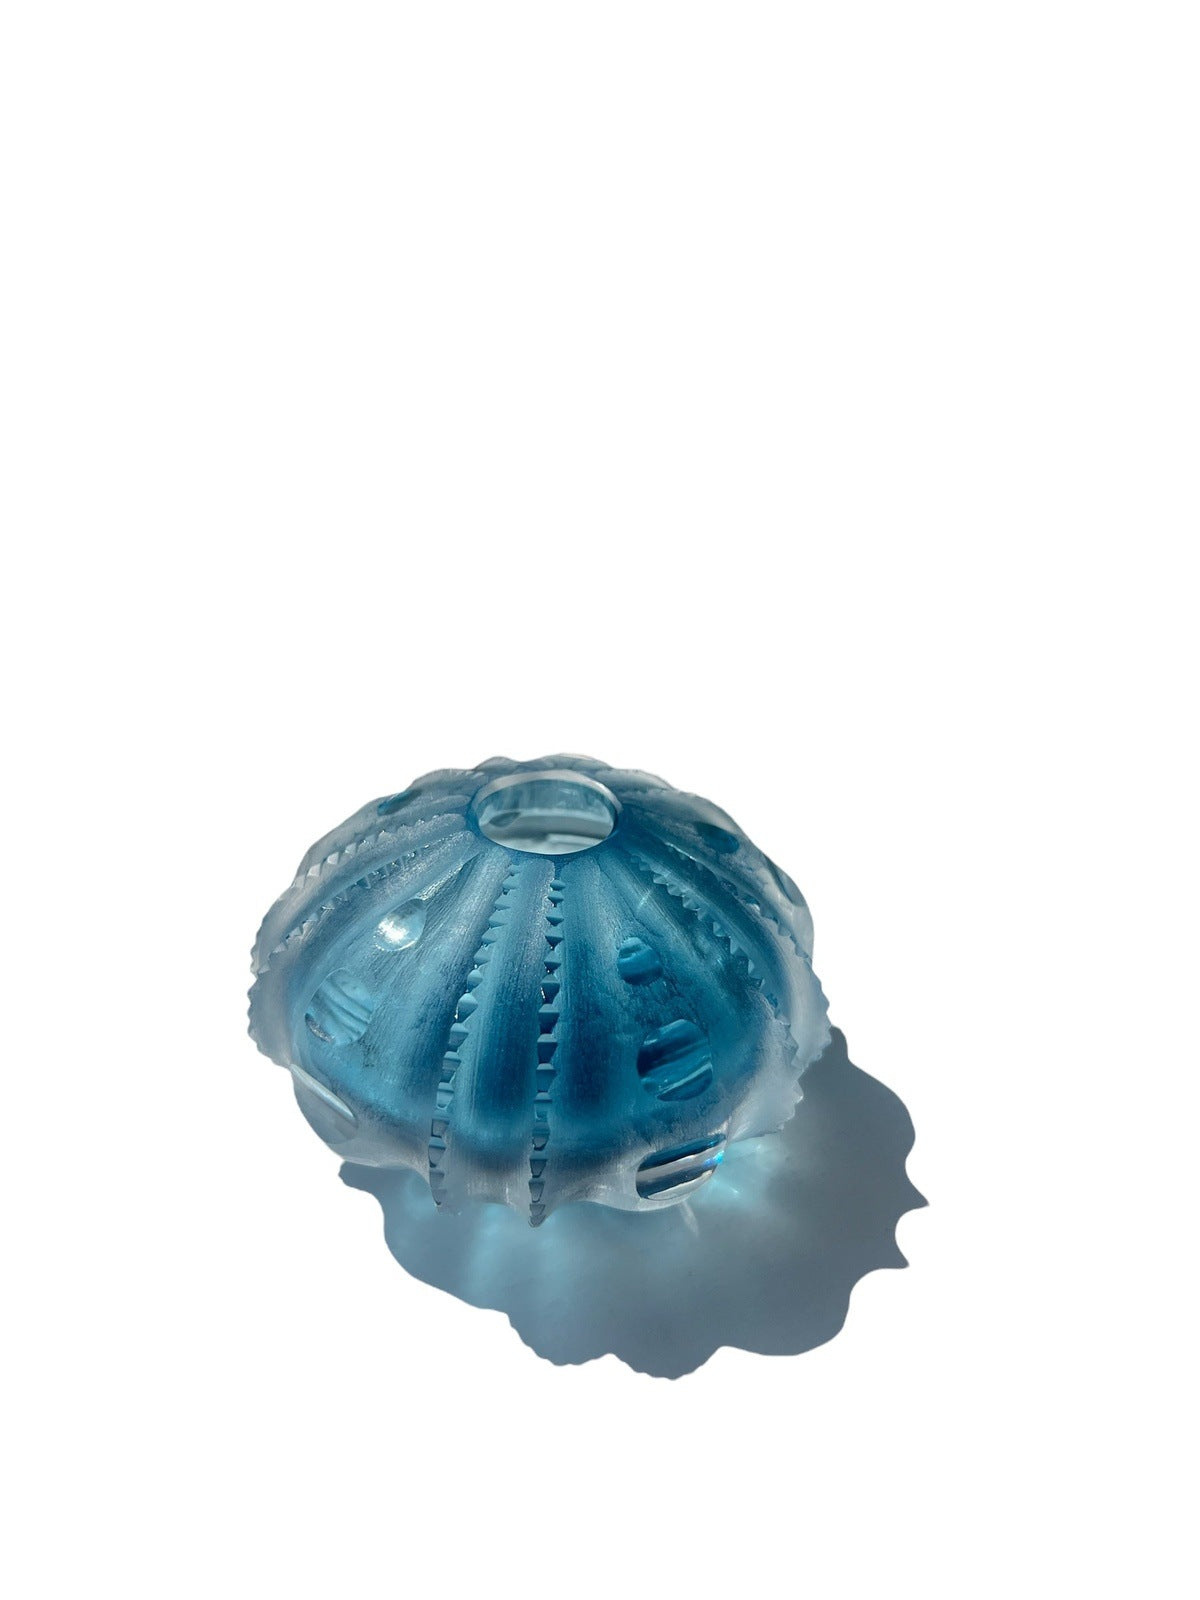 Sea Urchin Vase